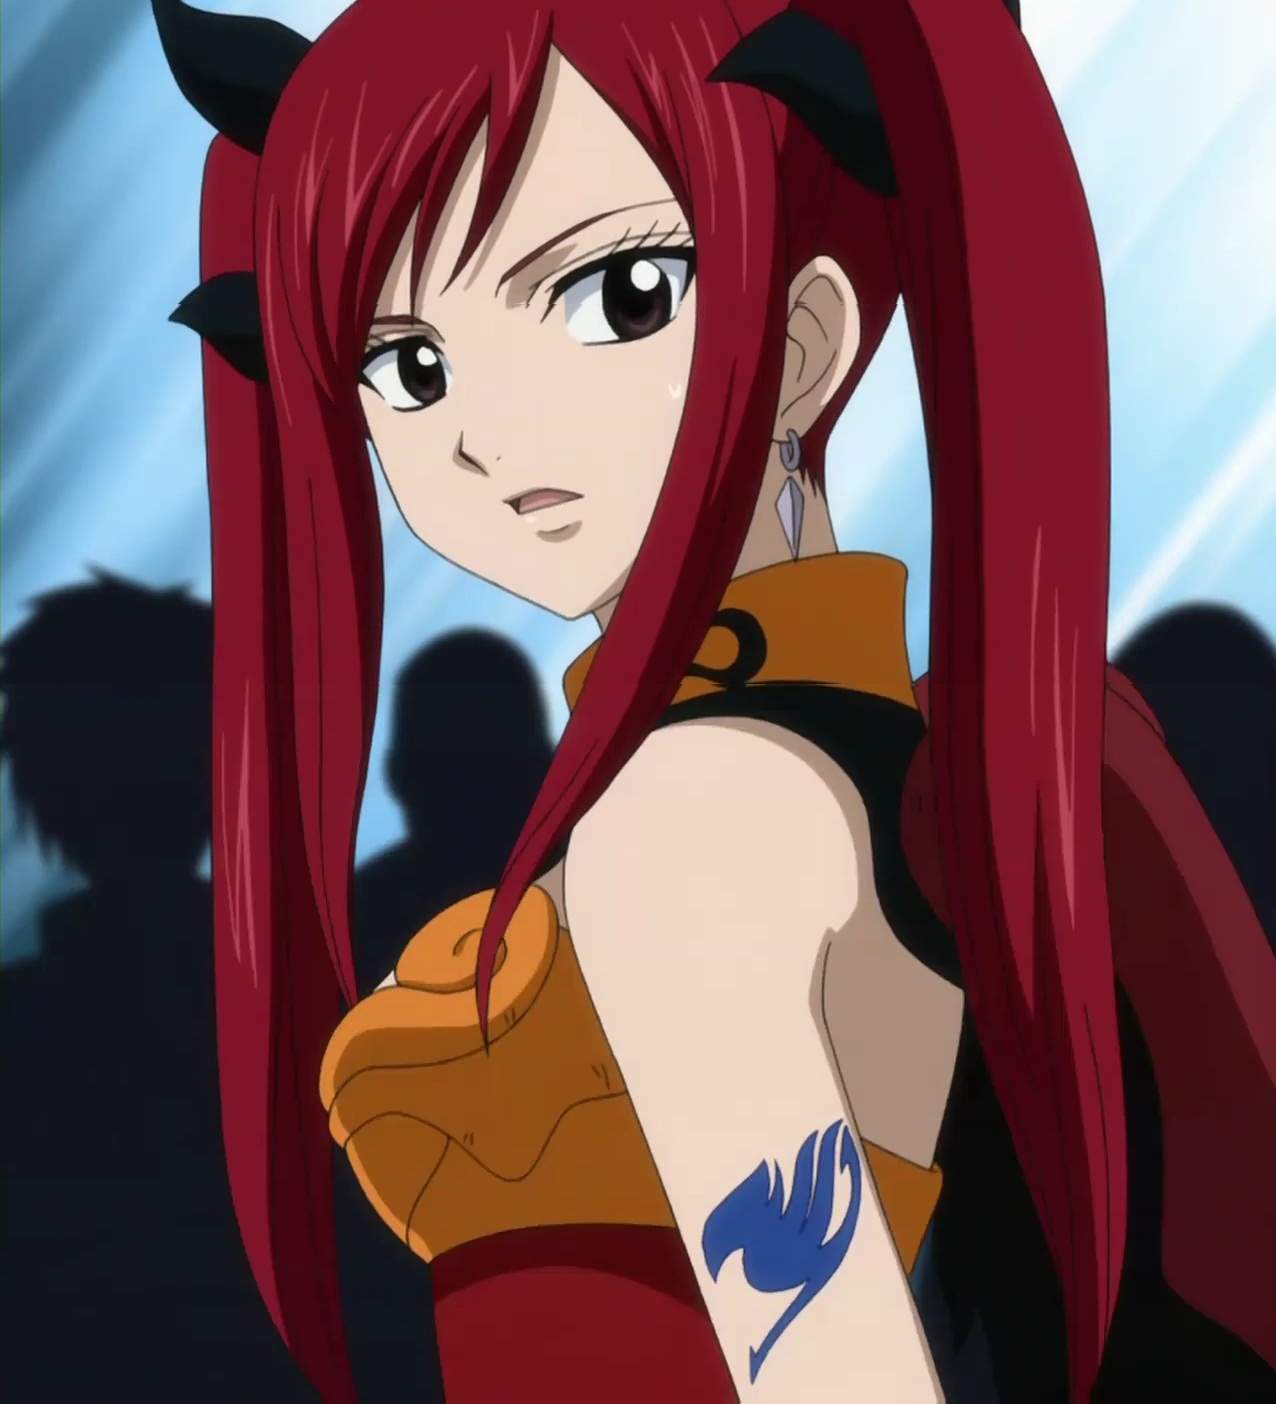 Anime Charakter mit langen, gewellten roten Haaren? (Haare, Manga, rot)